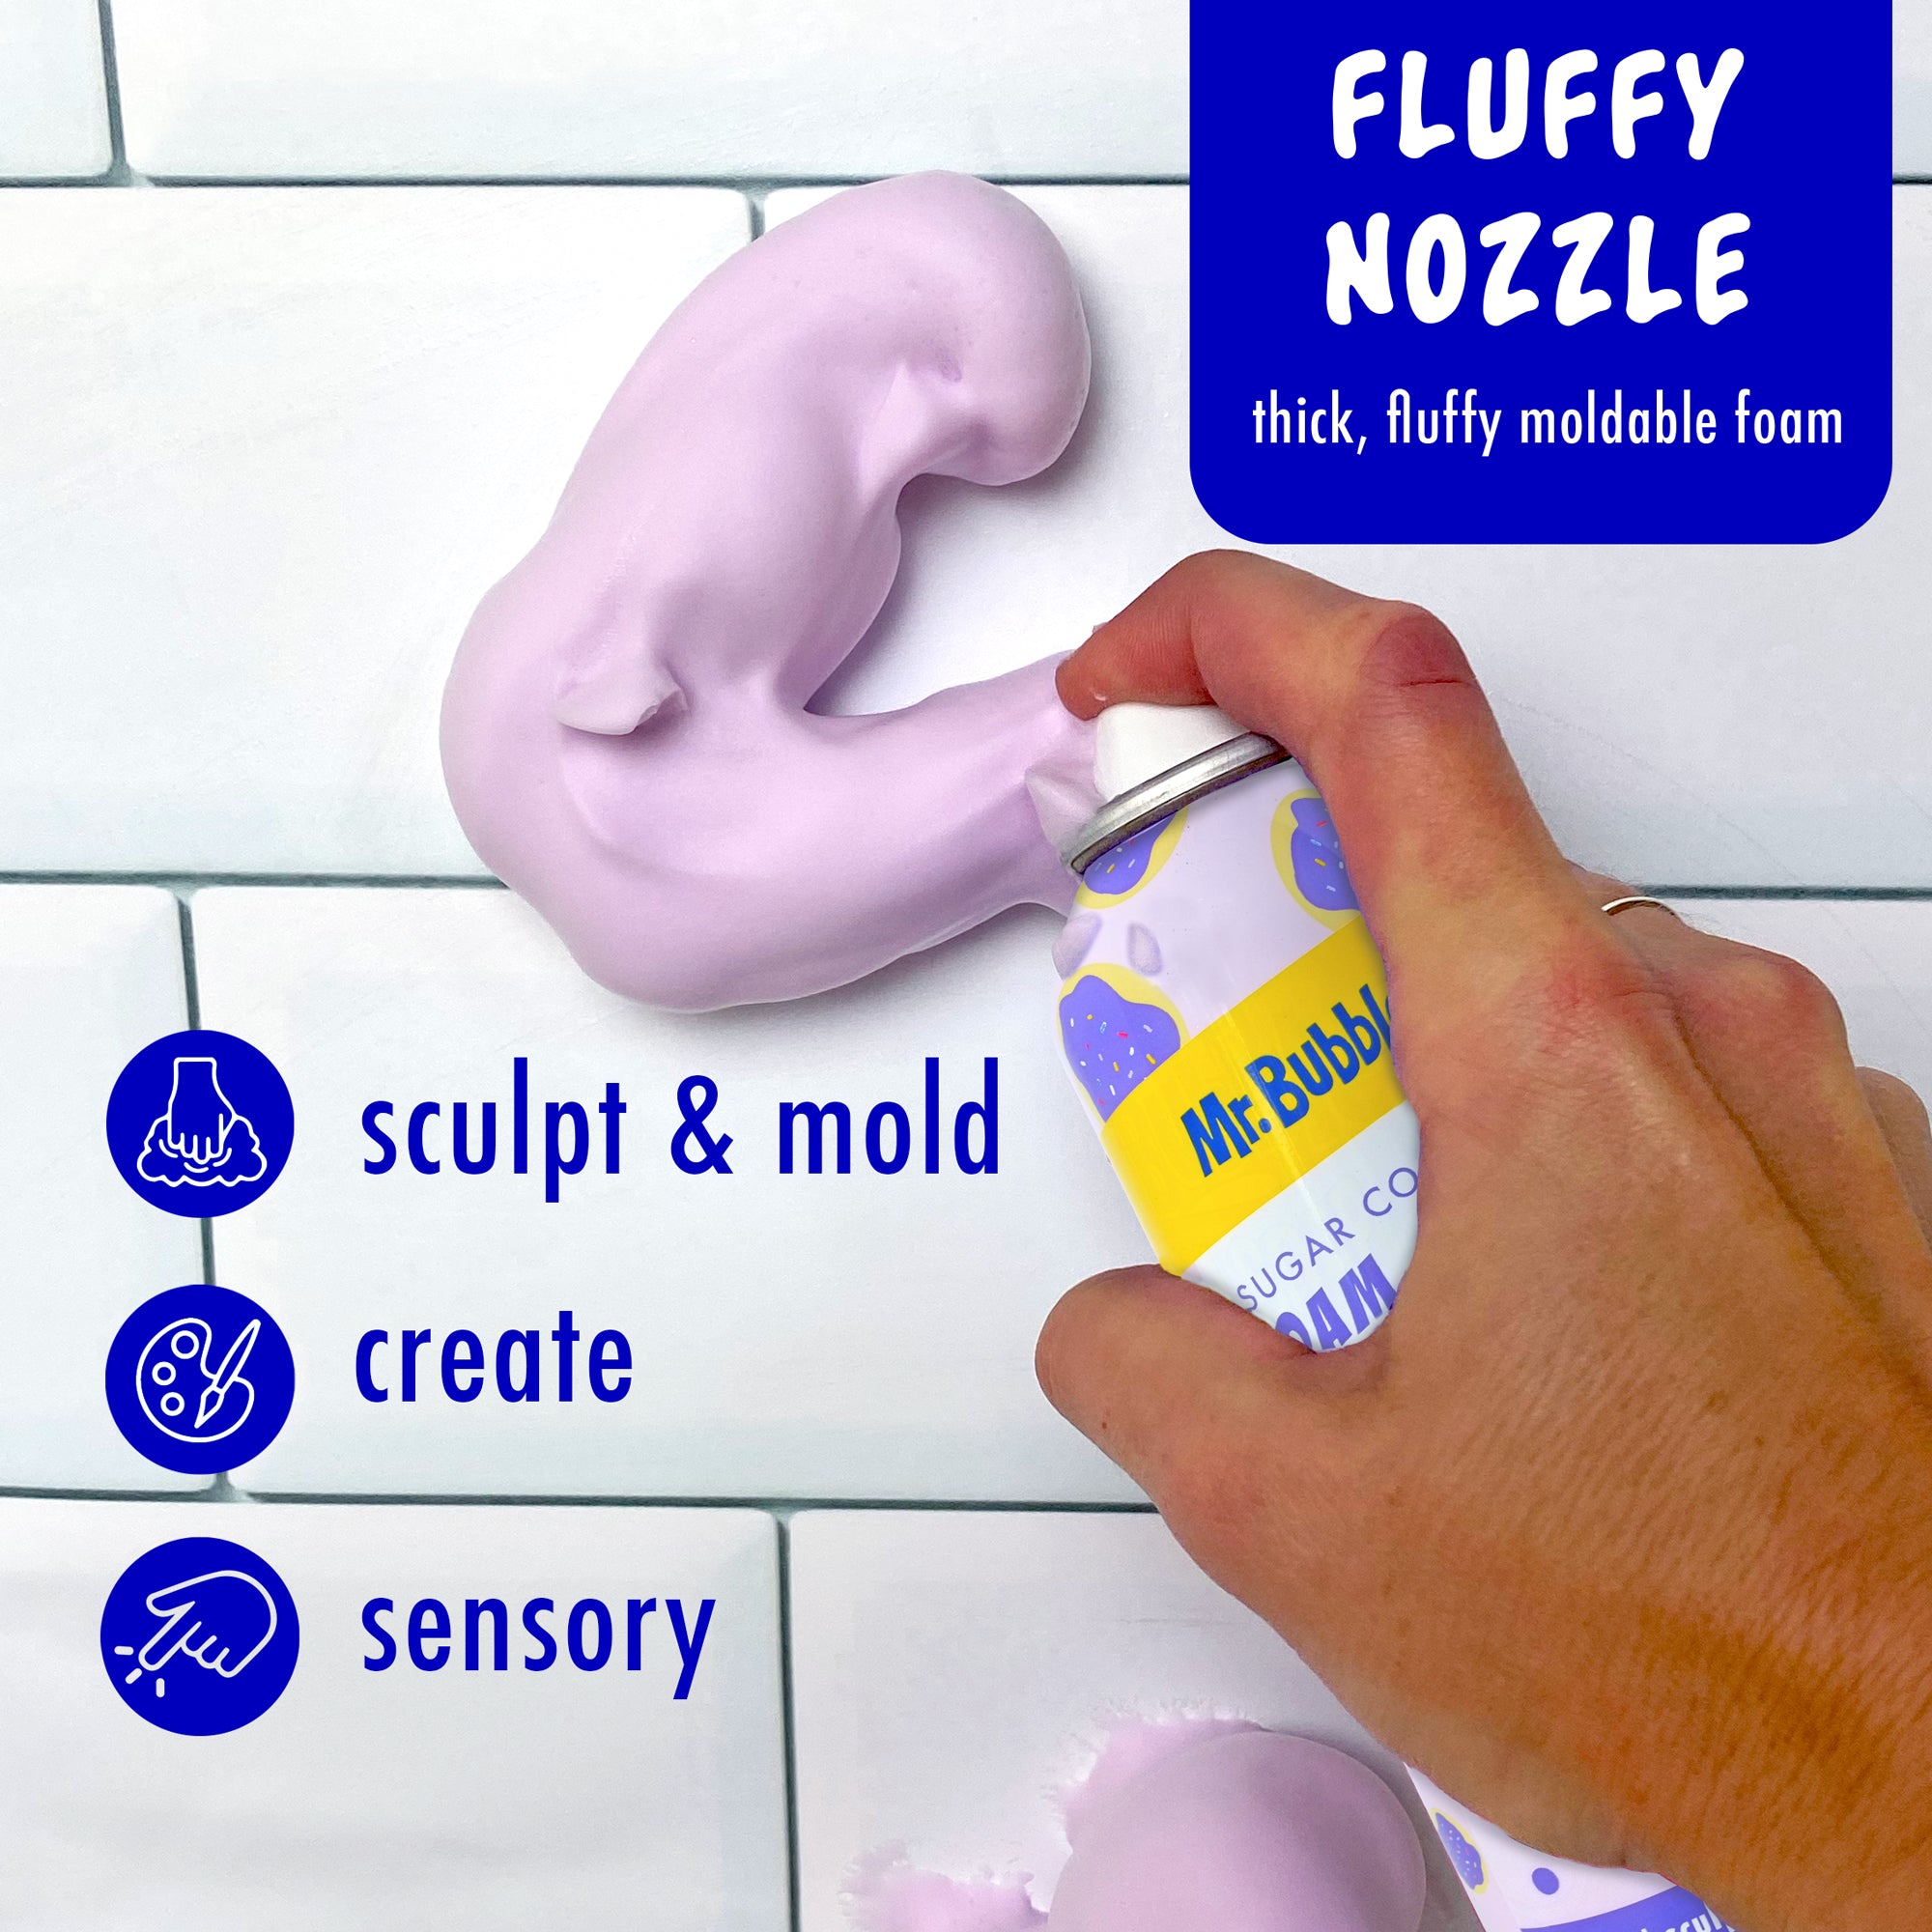 Mr. Bubbles Birthday Cake Foam Soap LTD Edition Draw/Sculpt/Create